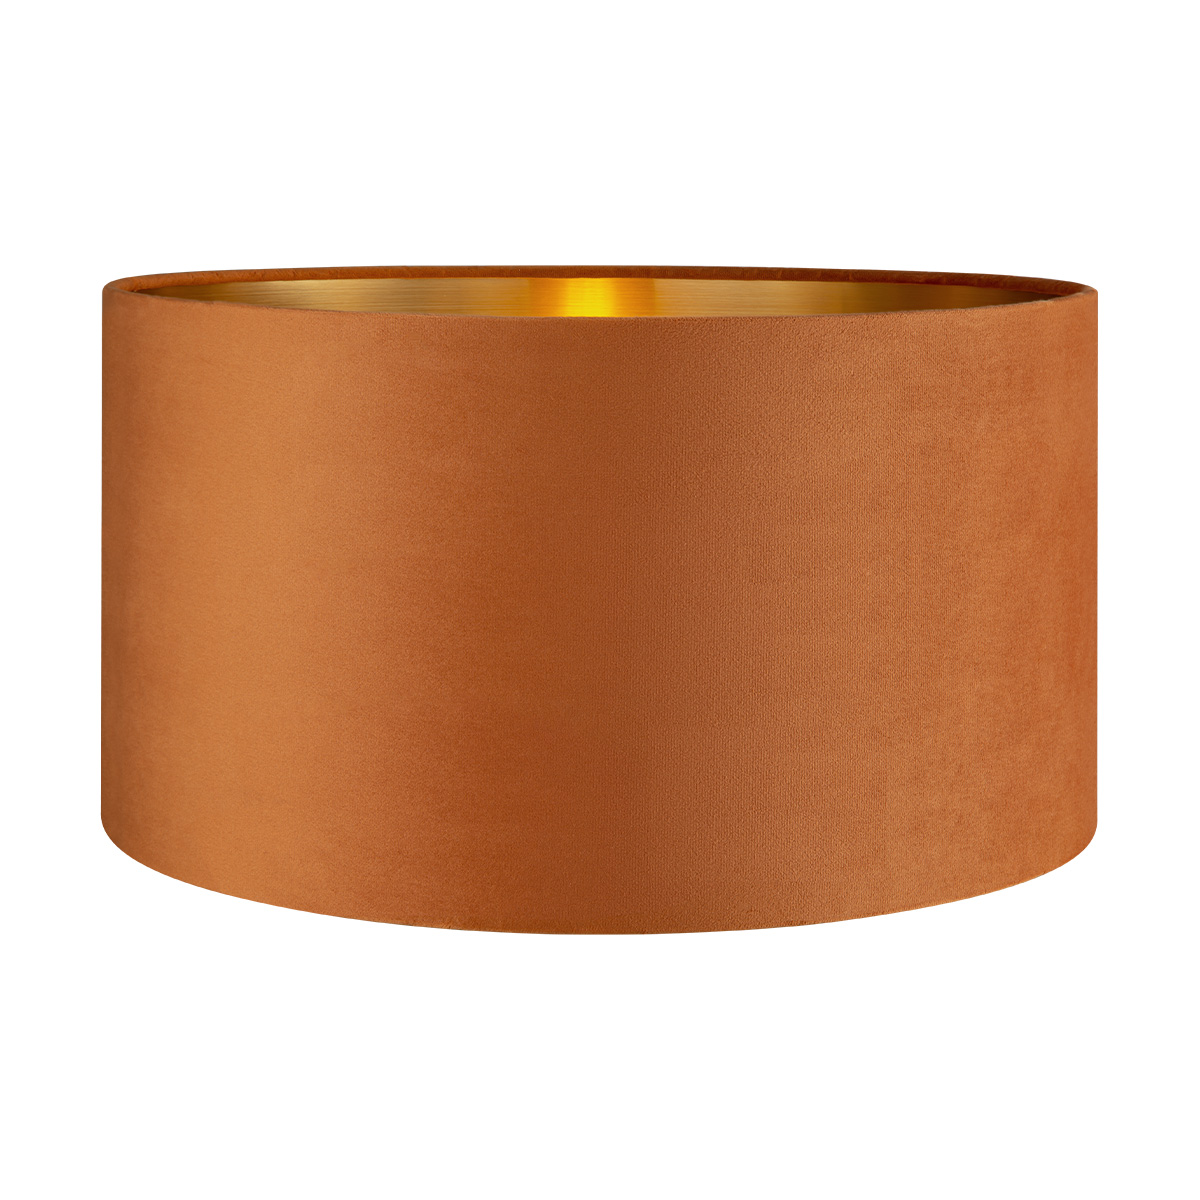 Tangla lighting - TLS7564-40OG - Lampshade - velvet - orange - diameter 40cm - E27